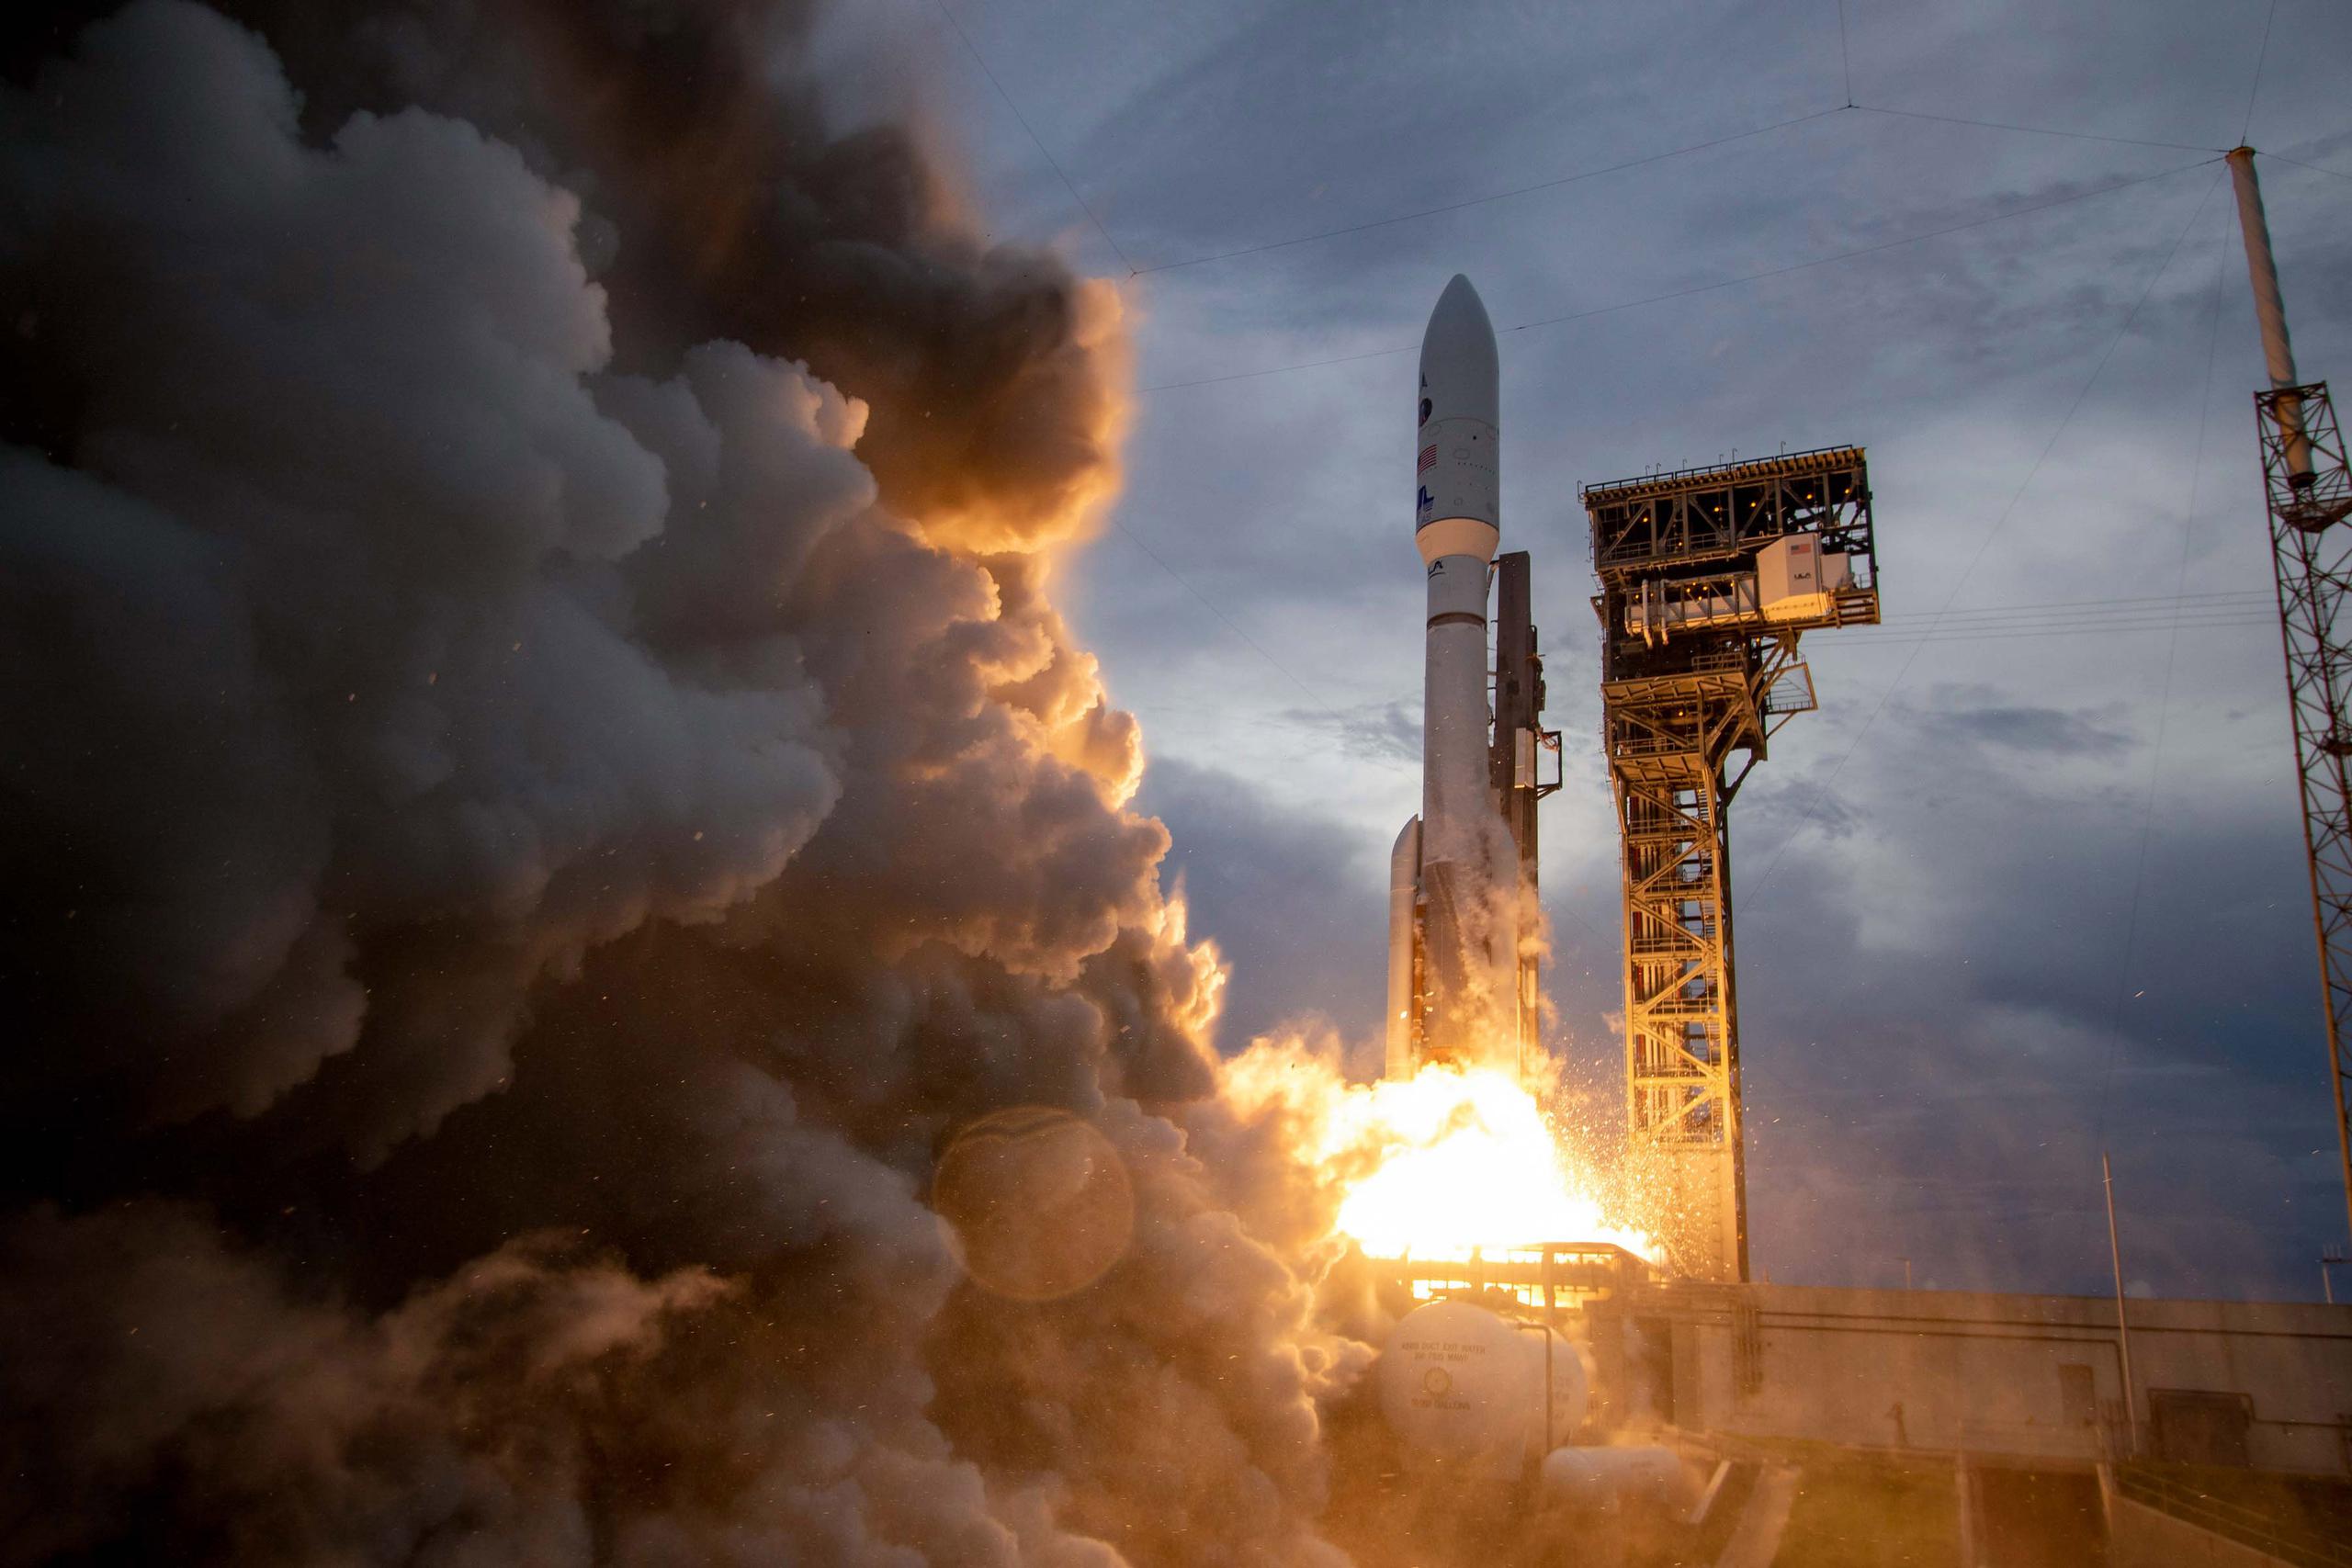 Fotografía cedida por la empresa aeroespacial United Launch Alliance (ULA) donde se aprecia el cohete Atlas V mientras despega hoy desde el Complejo de Lanzamiento 41 de la estación espacial de Cabo Cañaveral, Florida. (EFE/Jeff Spotts/ULA /SOLO USO EDITORIAL /NO VENTAS /SOLO DISPONIBLE PARA ILUSTRAR LA NOTICIA QUE ACOMPAÑA /CRÉDITO OBLIGATORIO)